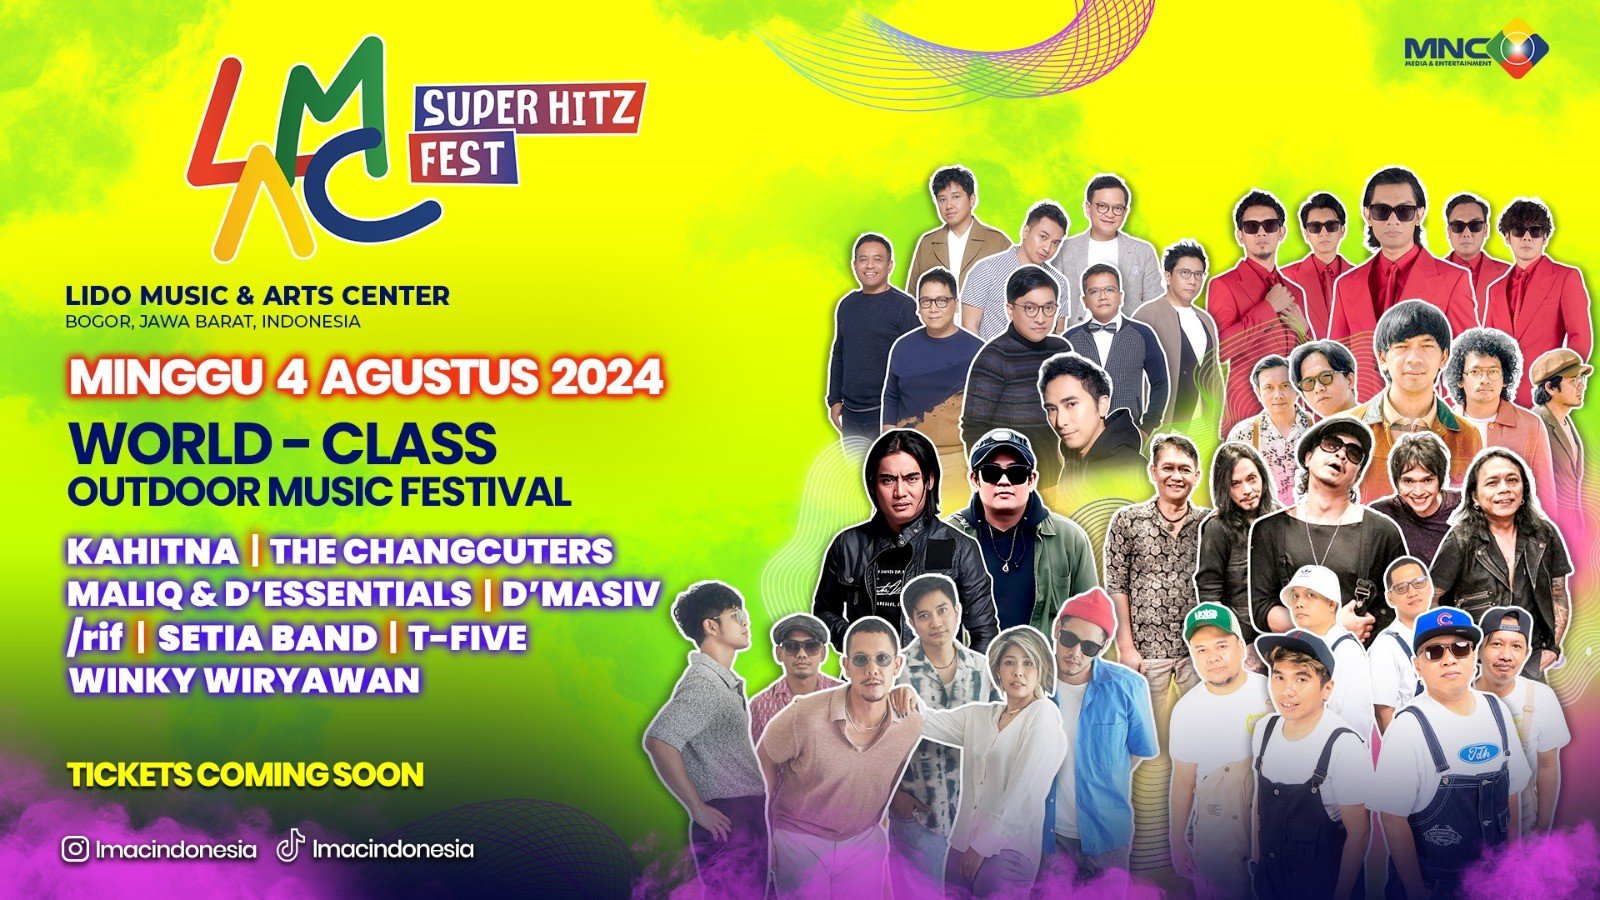 Hadirkan Musisi Papan Atas MNC Media & Entertainment Gelar LMAC Super Hitz Fest 2024